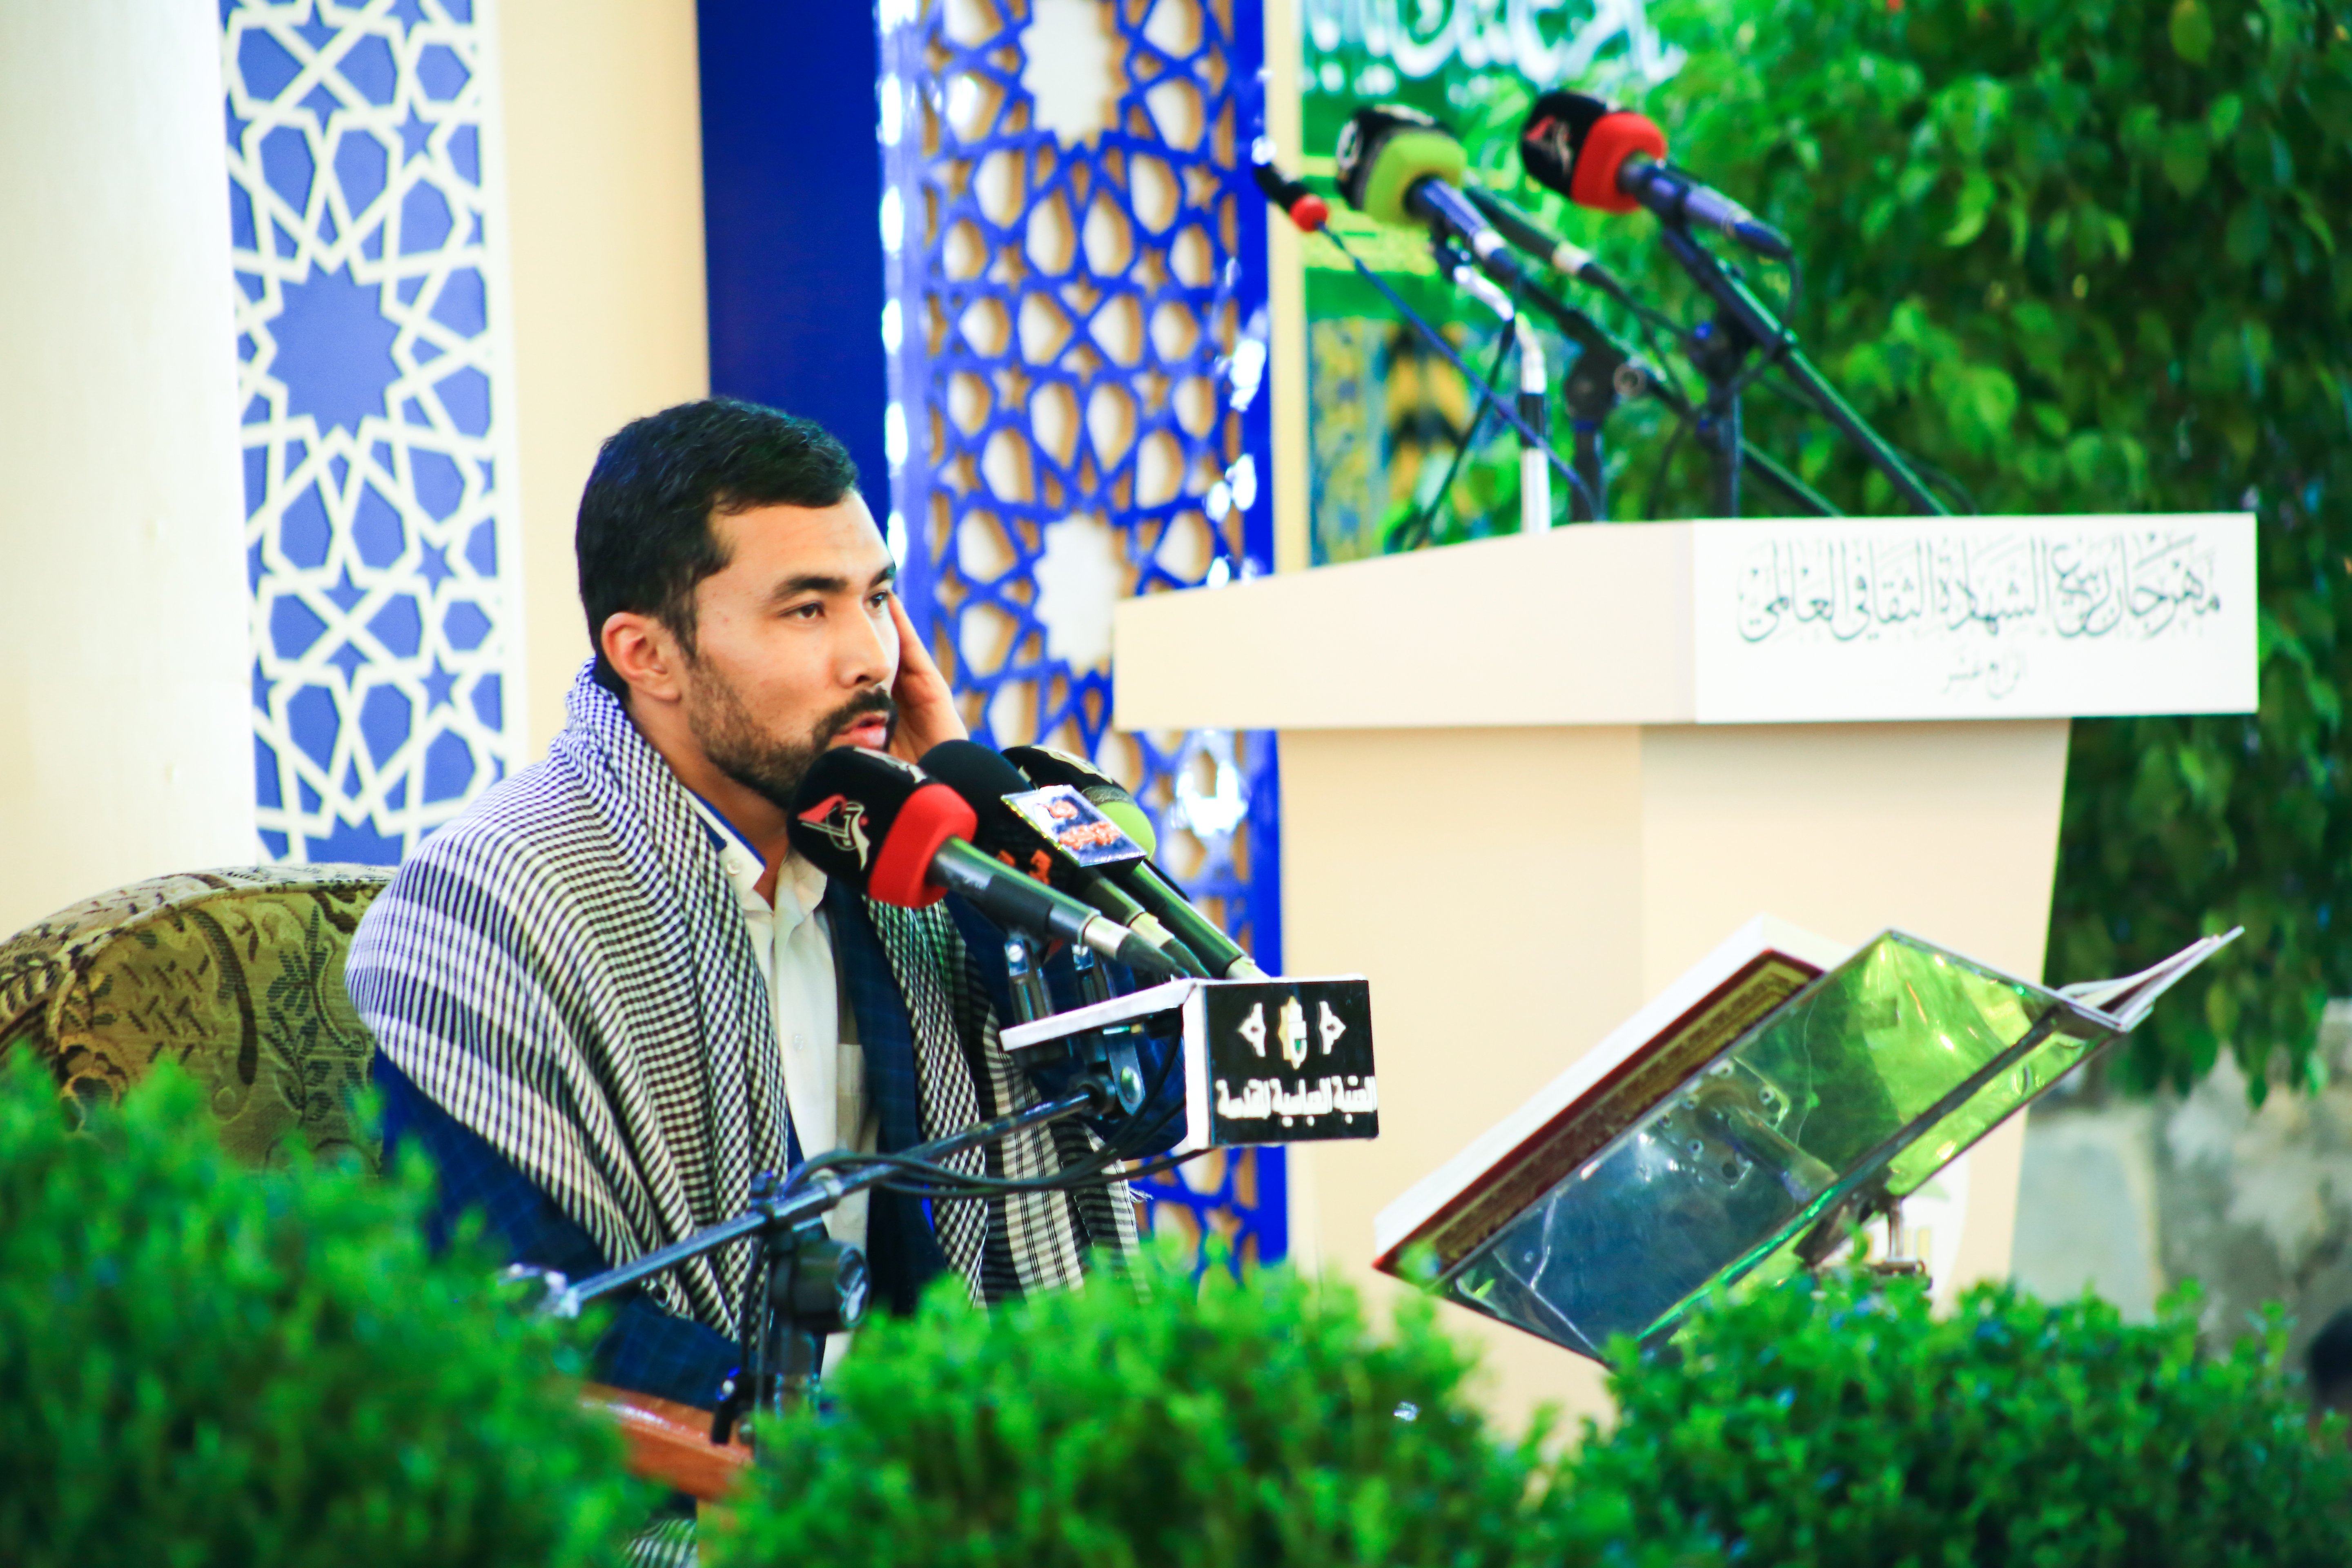 وسط حضور كبير معهد القرآن الكريم يُحيّ أمسية قرآنية ضمن فعاليات مهرجان ربيع الشهادة العالمي الرابع عشر